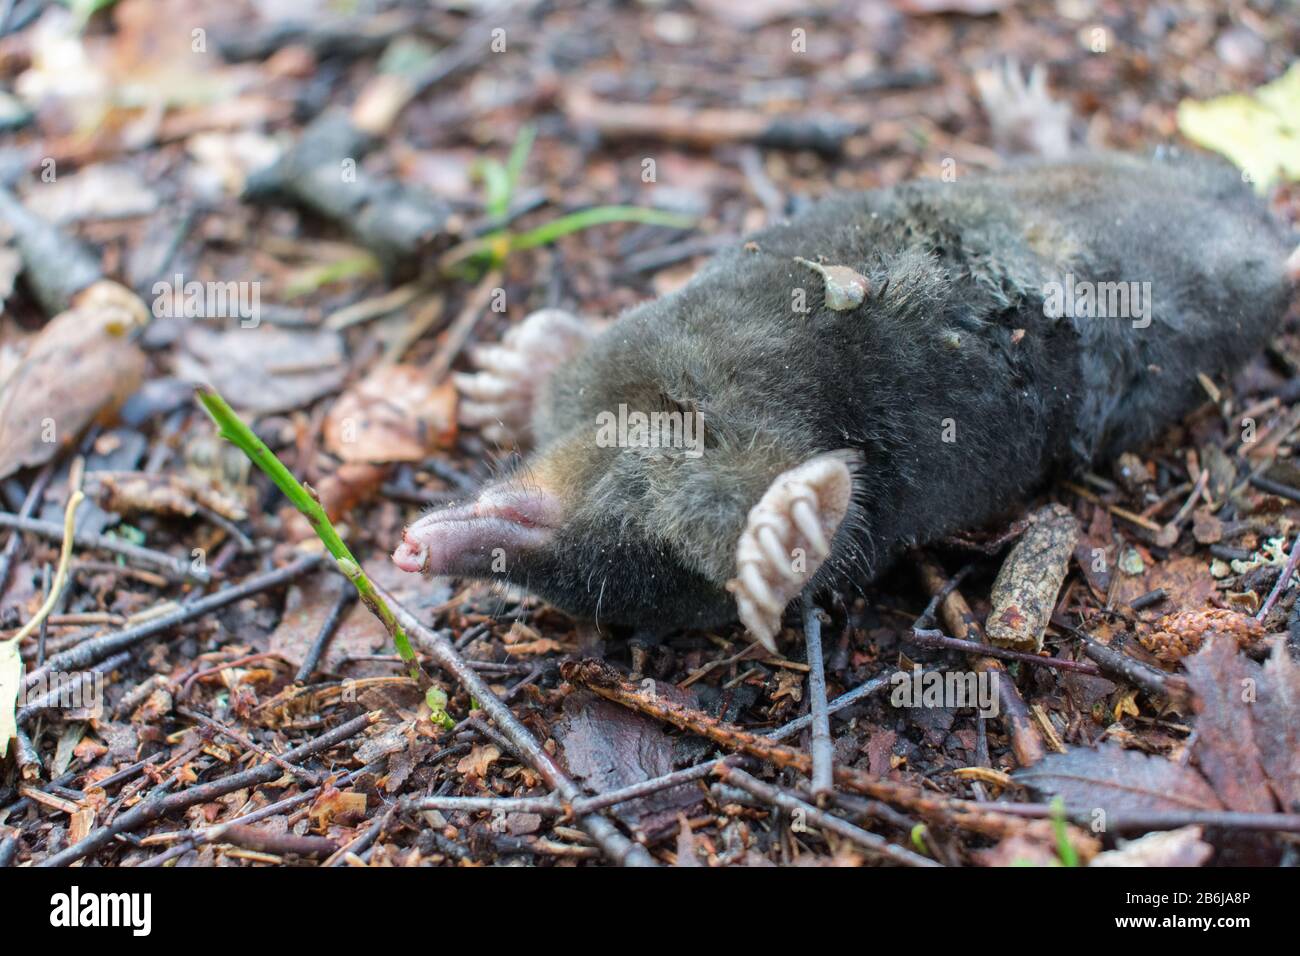 Toter europäischer Maulwurf (Talpa europaea), der sich auf dem Boden in  Wald auf den Kopf stellt Stockfotografie - Alamy